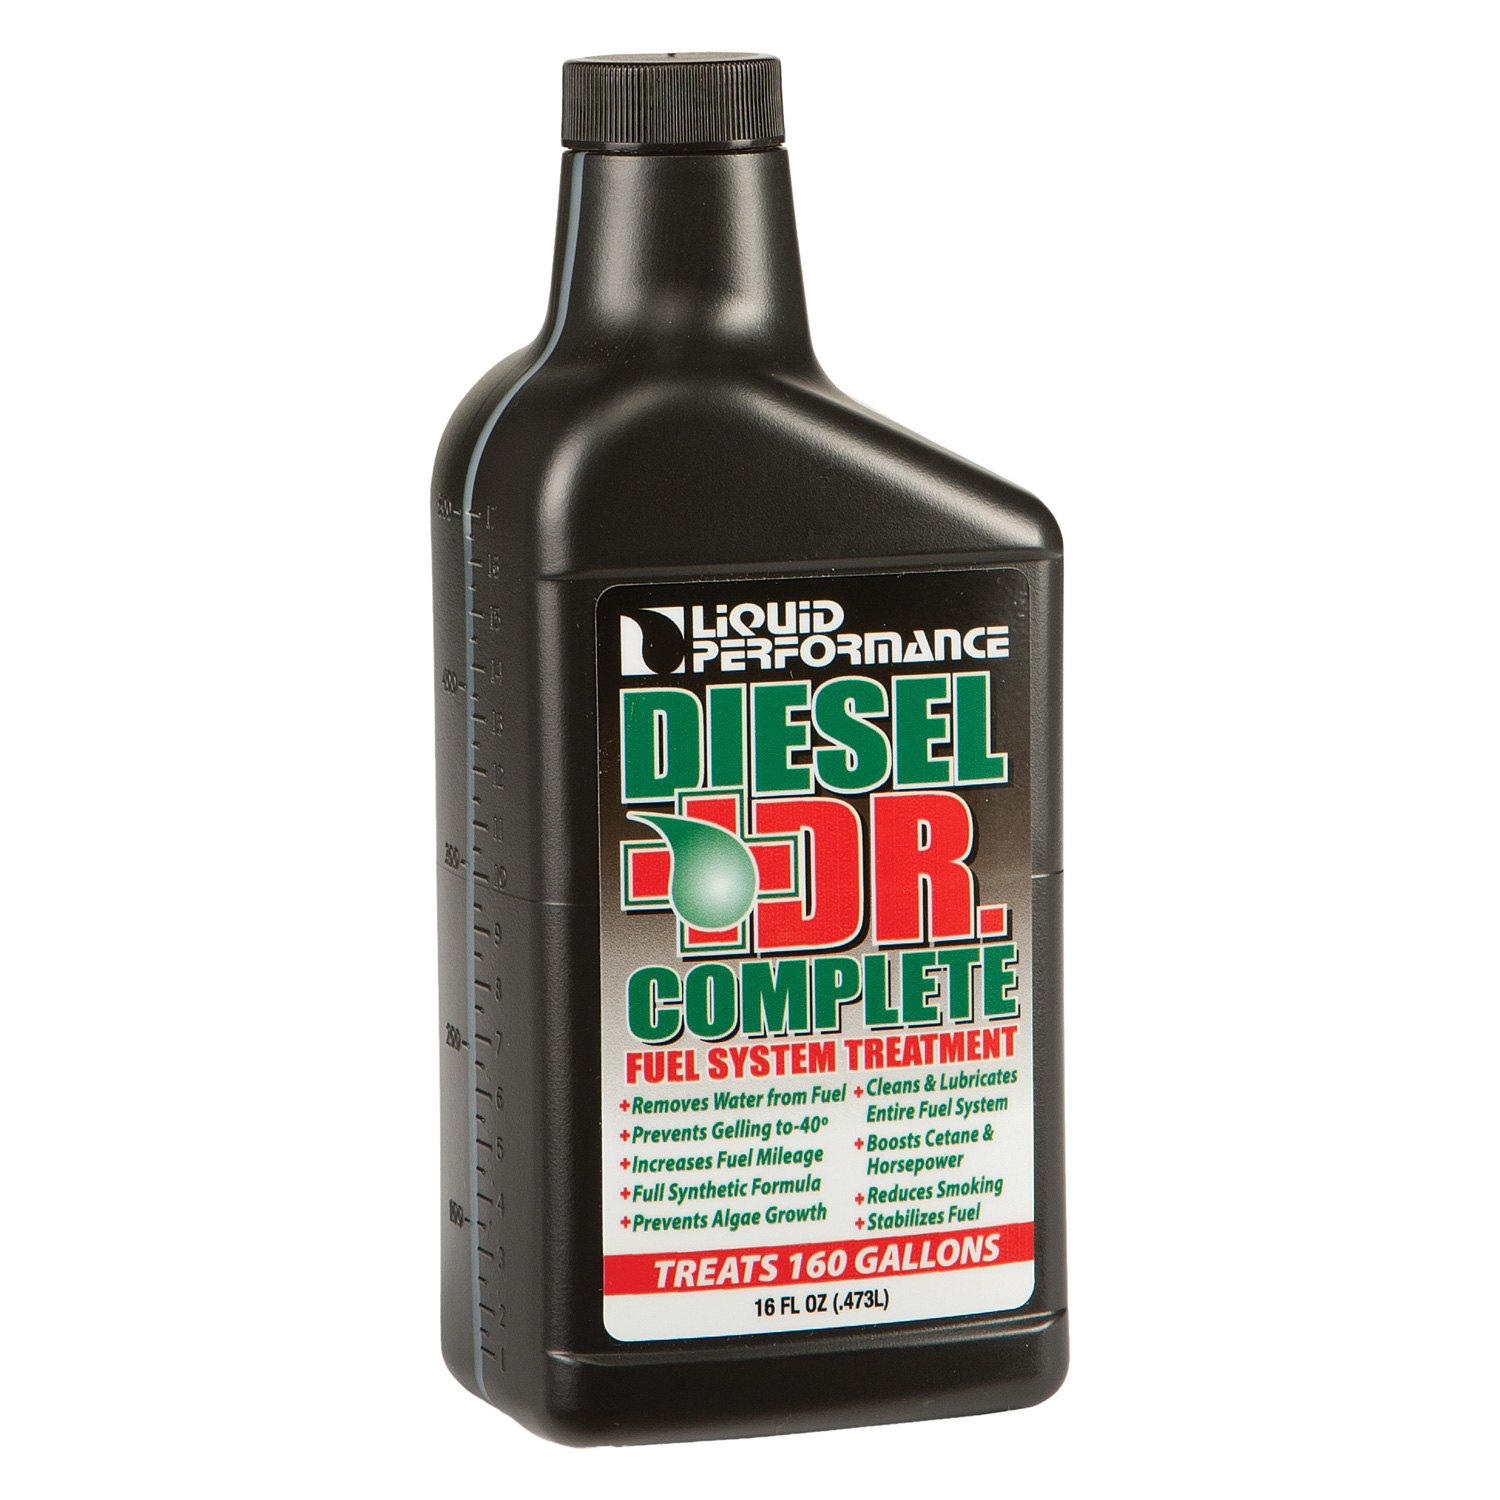 Mr diesel. Dr Diesel 6%. Dr Diesel вкусы. Доктор дизель вкусовое. Dr Diesel Mix.